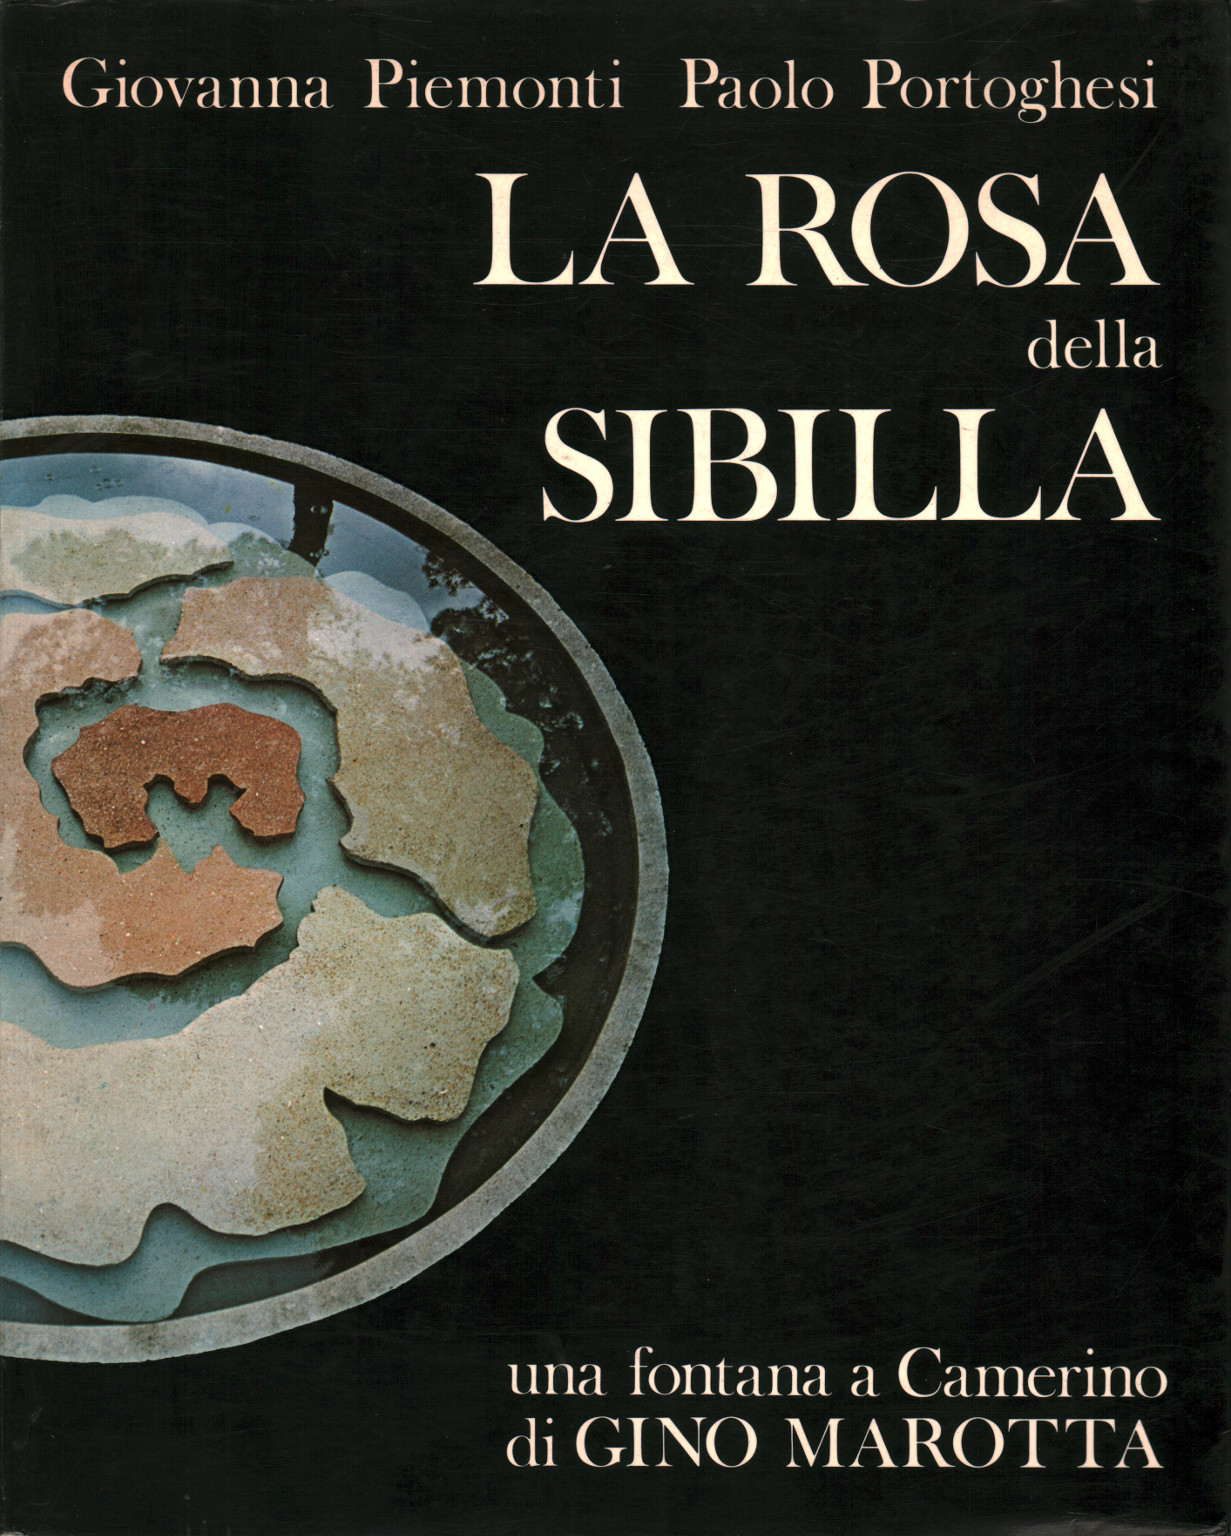 La rosa della Sibilla, s.a.